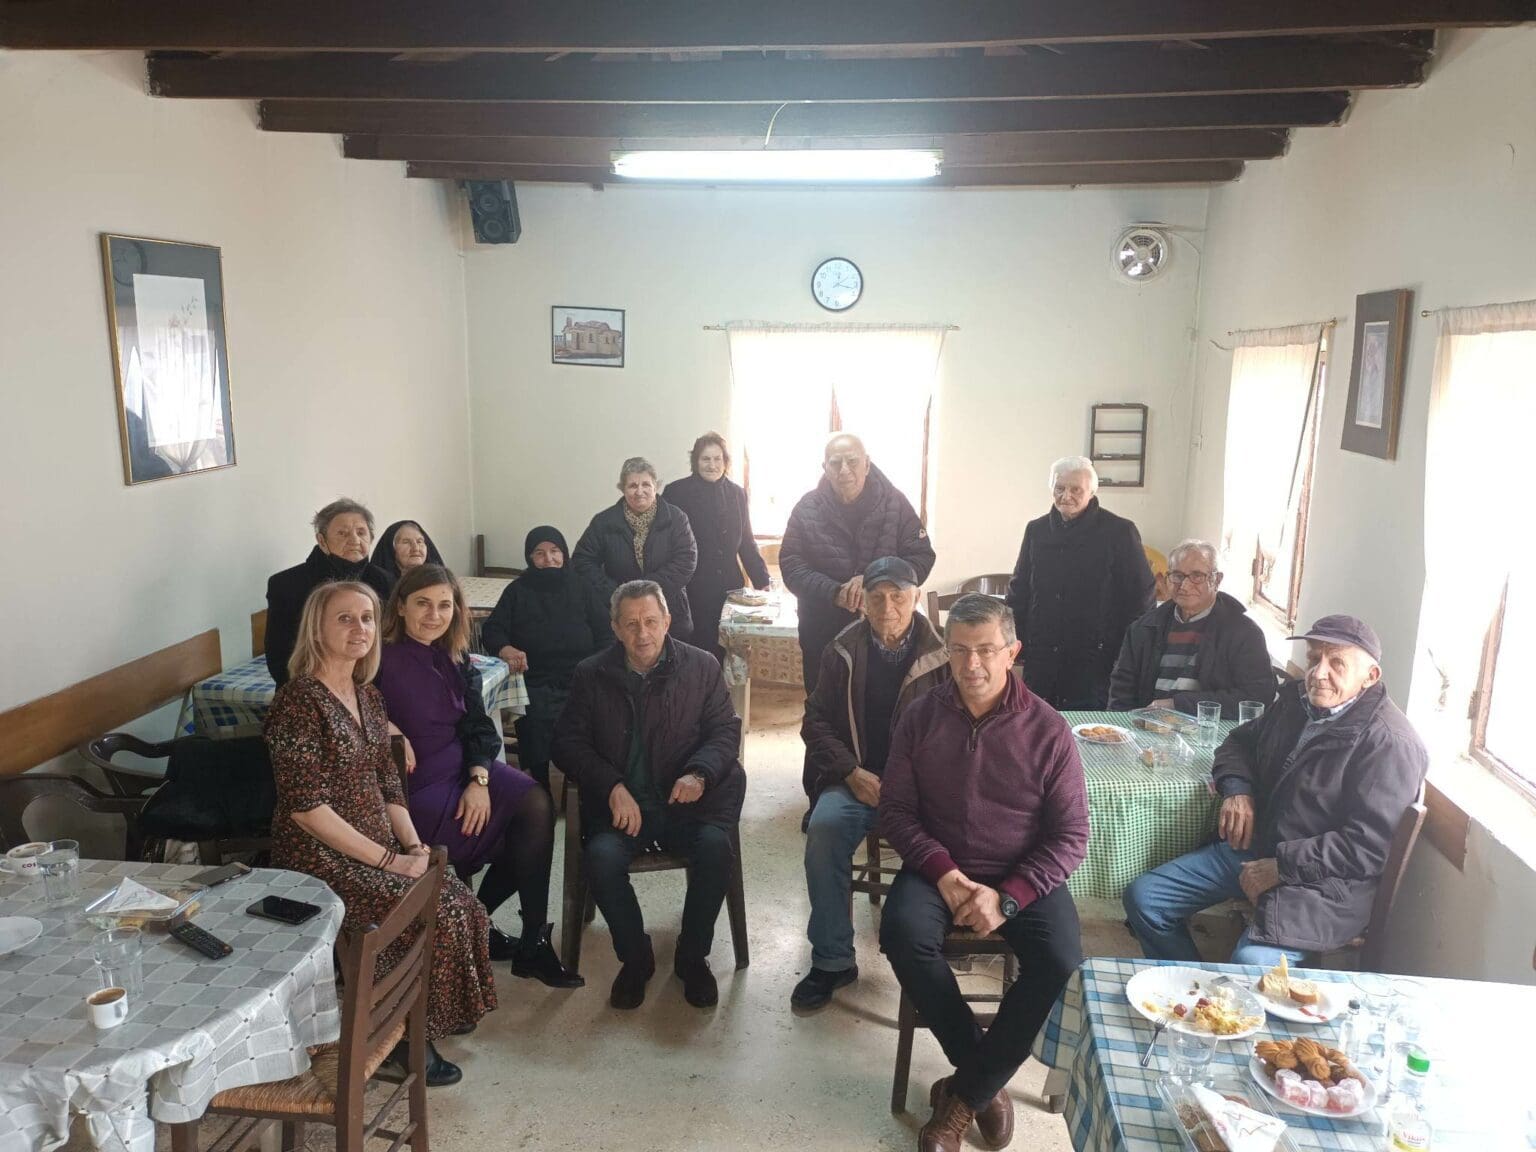 Δήμος Κοζάνης: Χριστουγεννιάτικη εκδήλωση στο Κτένι για τους ηλικιωμένους ωφελούμενους του προγράμματος «Βοήθεια στο Σπίτι»